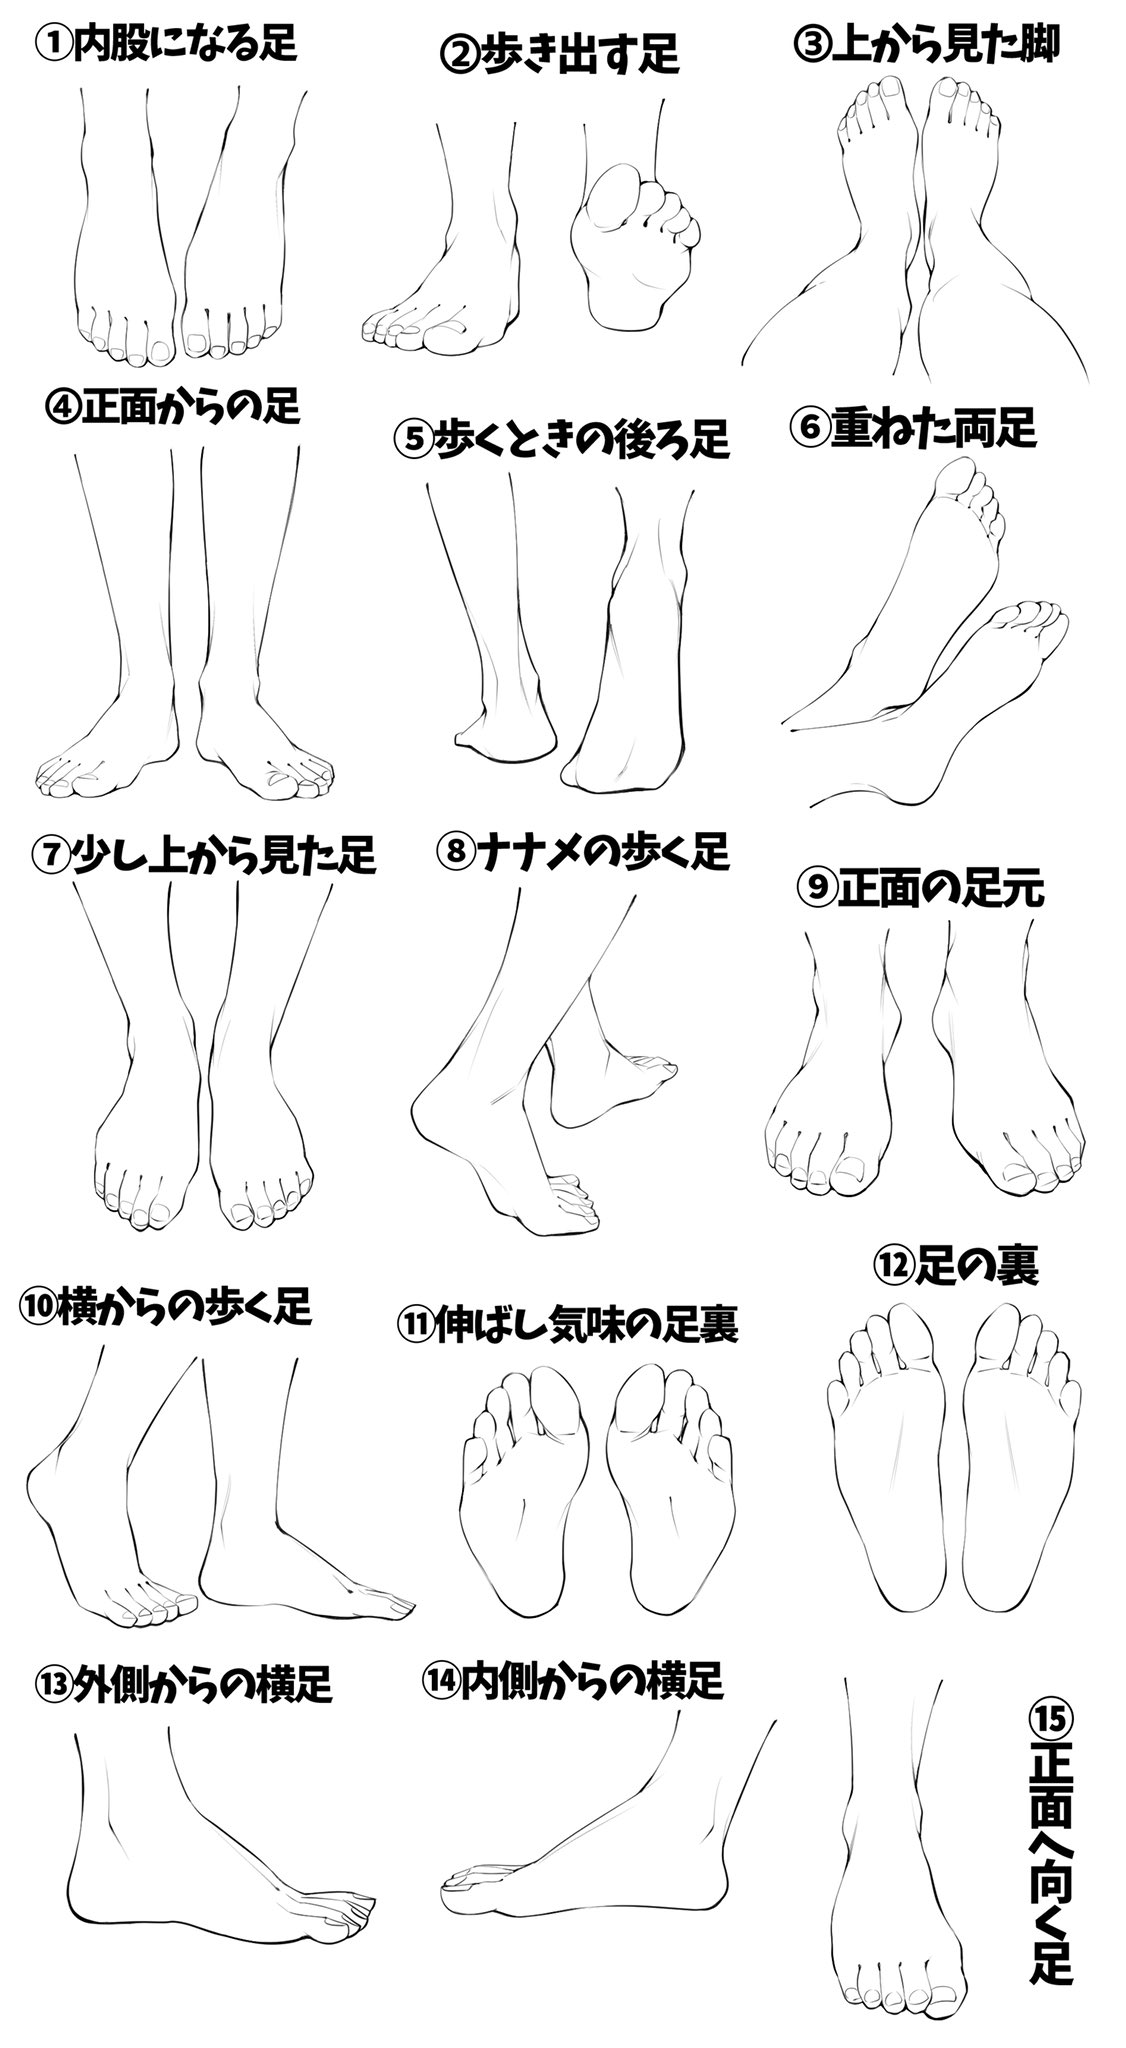 吉村拓也 イラスト講座 A Twitteren 足がヘタになる という人へ 足の描き方模写パターン表 です ご自由に練習にお使いください T Co Wpovf5vrbh Twitter